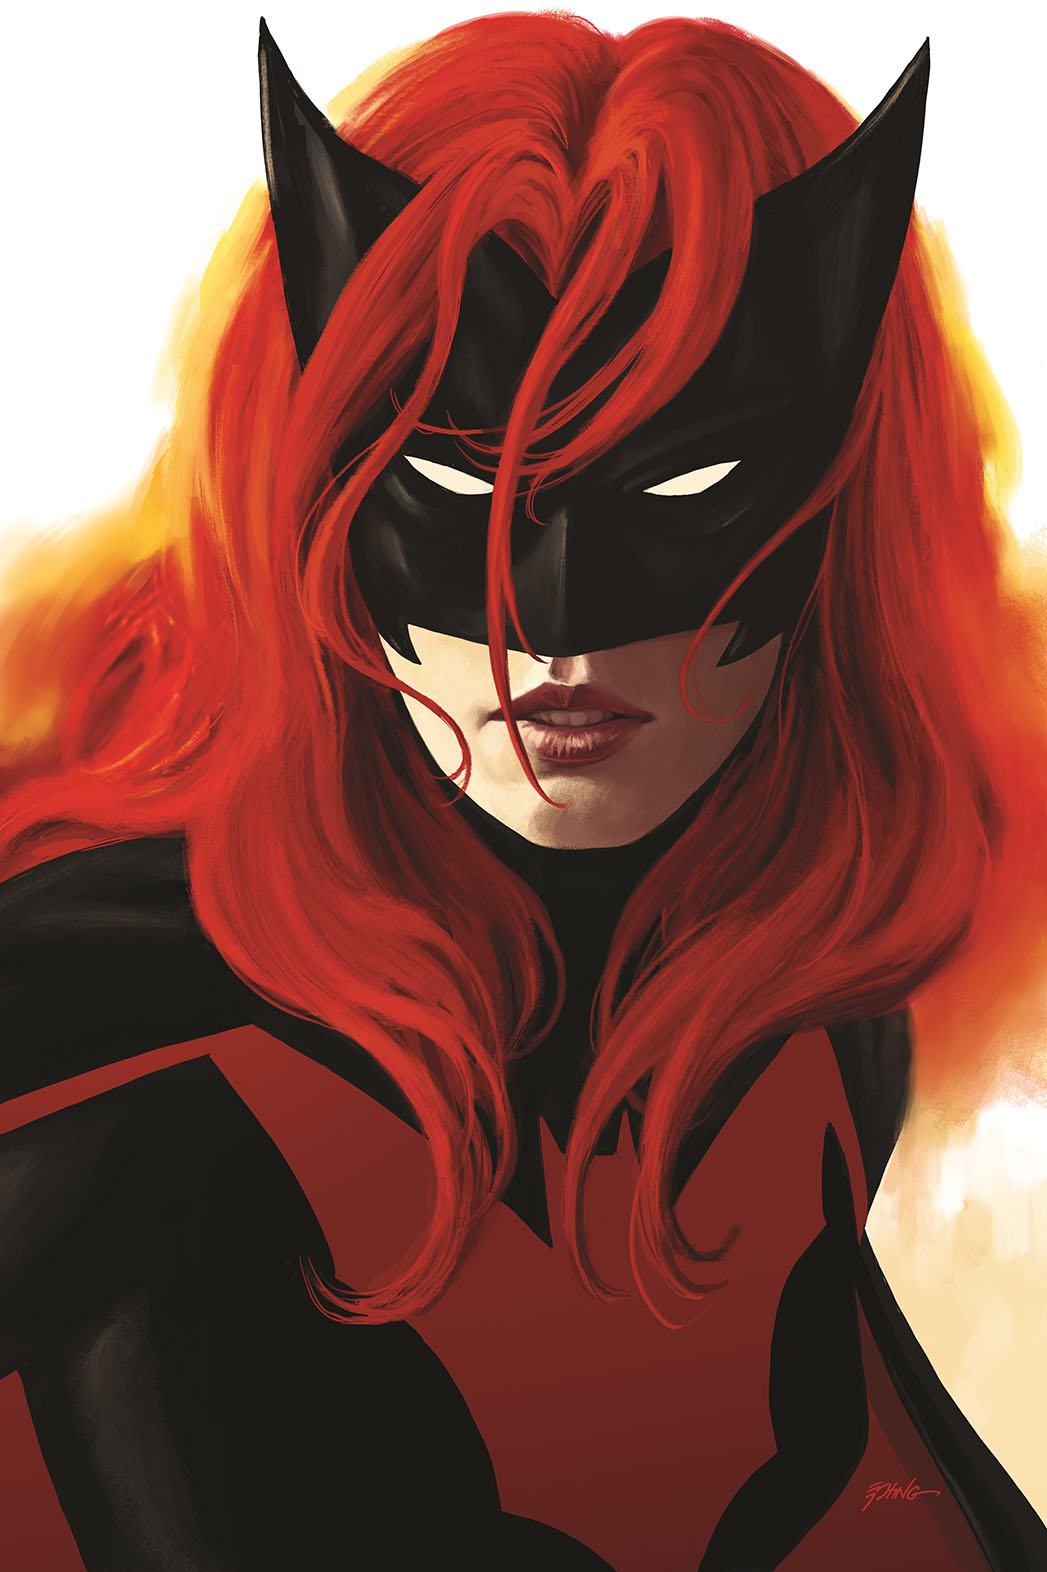 Batwoman #1